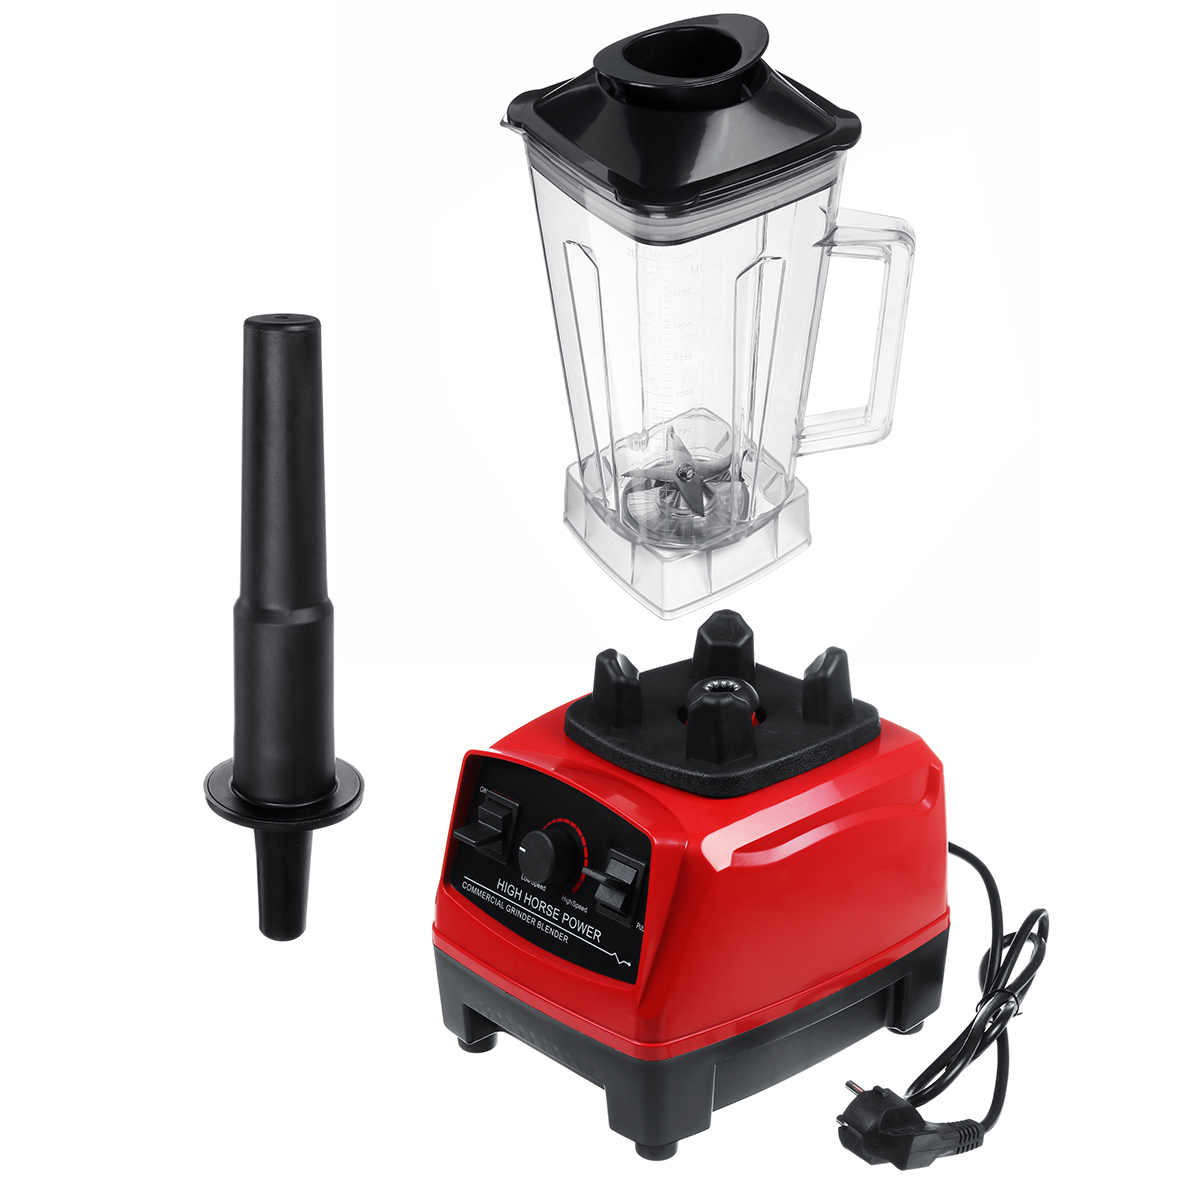 

Commercial Grade Blenders Mixer Blender Juicer High Power Food Processor Ice Smoothie Bar Fruit Blenders Adjustable